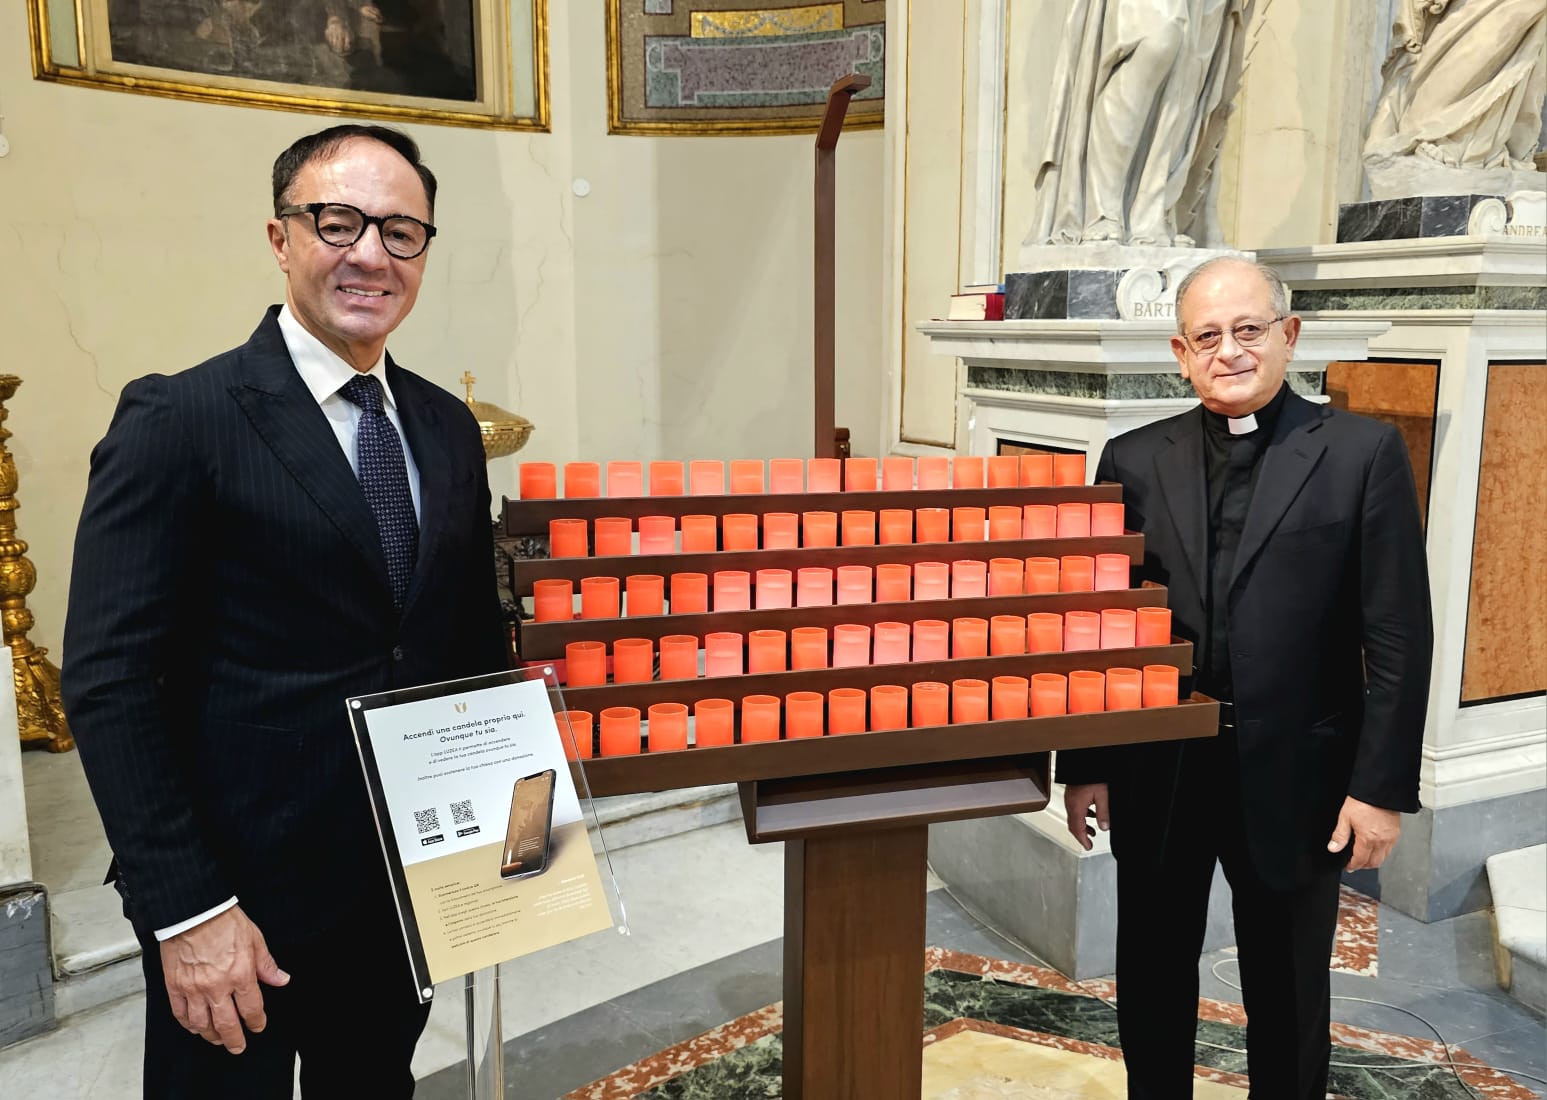 Culto e turismo: Dominus Jesus, Confesercenti e Luzea lanciano il primo candeliere digitale in Campania